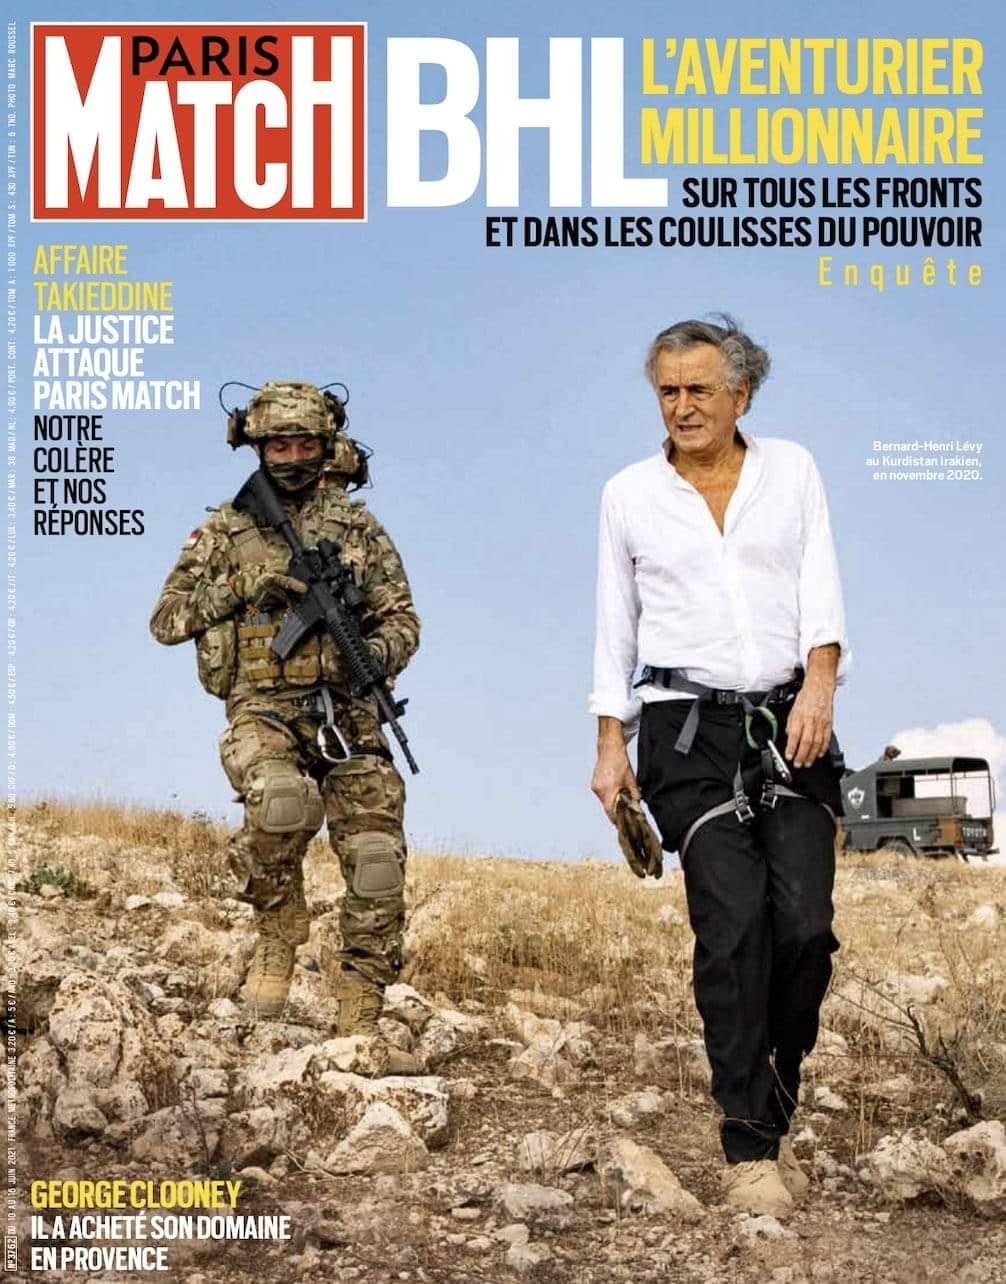 “Paris Match” se ridiculise en servant la soupe à “BHL, l’aventurier millionnaire sur tous les fronts et dans les coulisses du pouvoir”